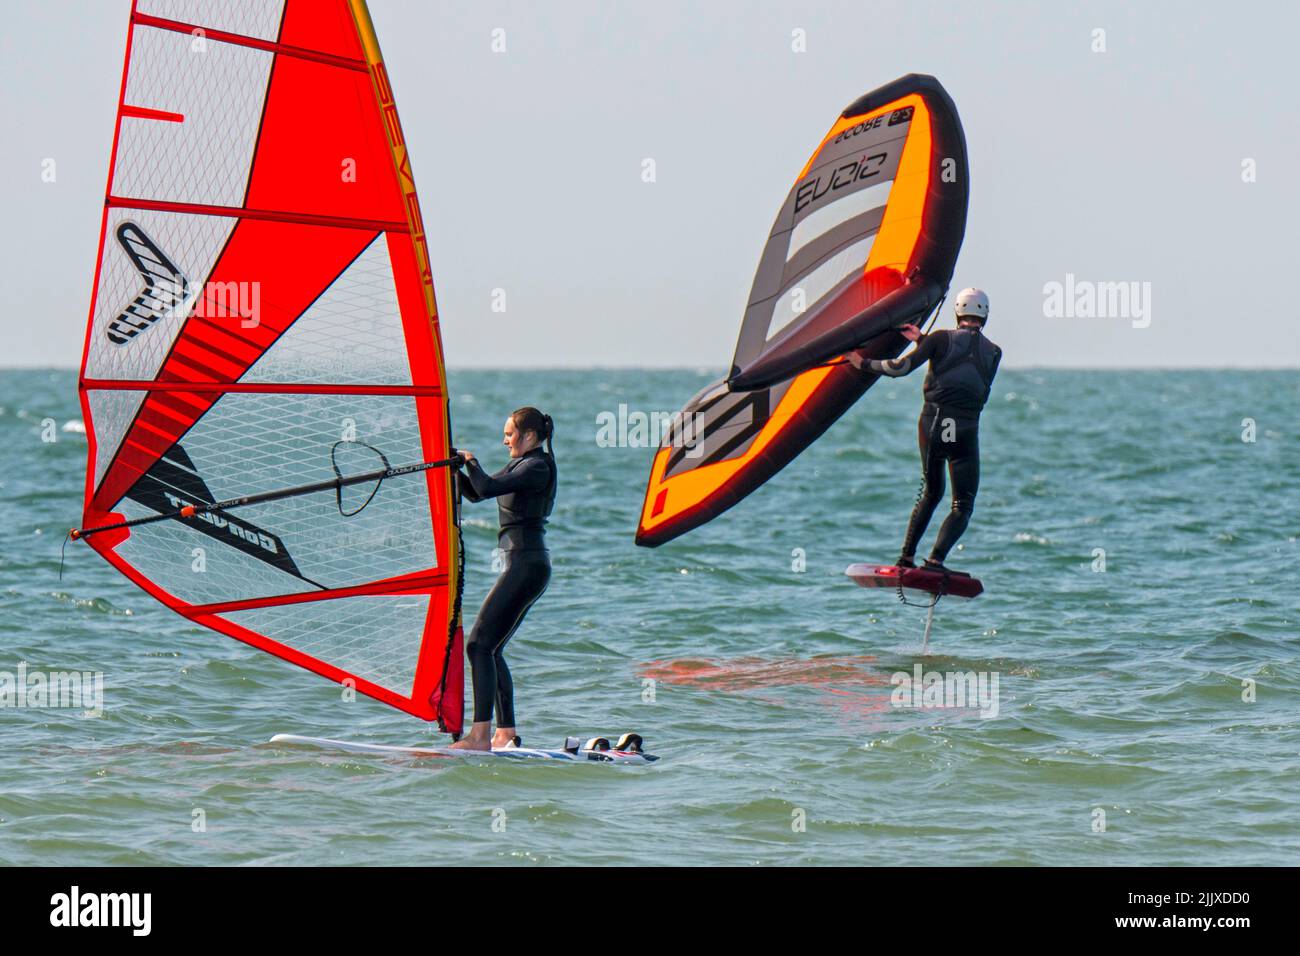 Niña / mujer windsurf de recreo en traje negro practicando windsurf clásico y wingboarder / ala boarder ala barnizar en el mar Foto de stock